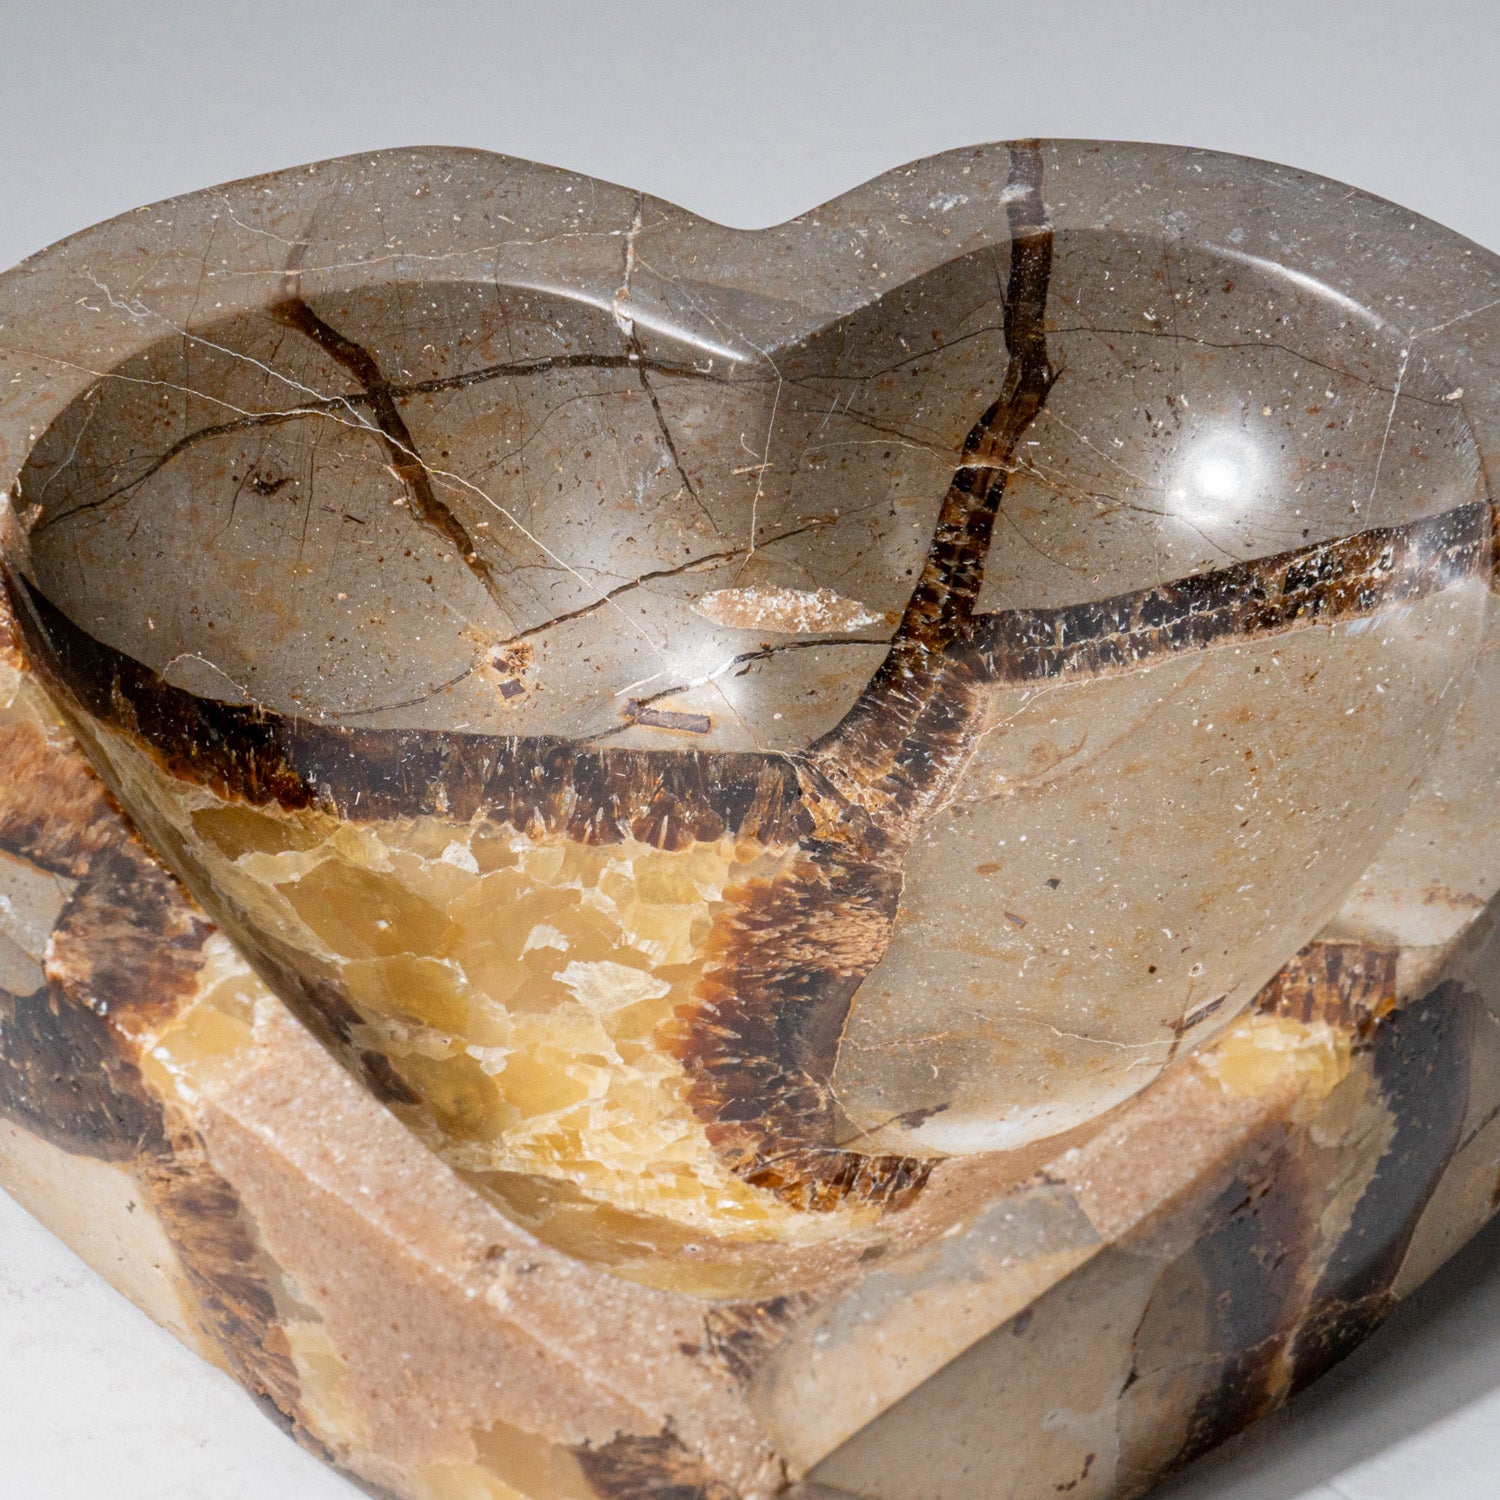 Genuine Polished Septarian Heart Shaped Bowl (2 lbs)